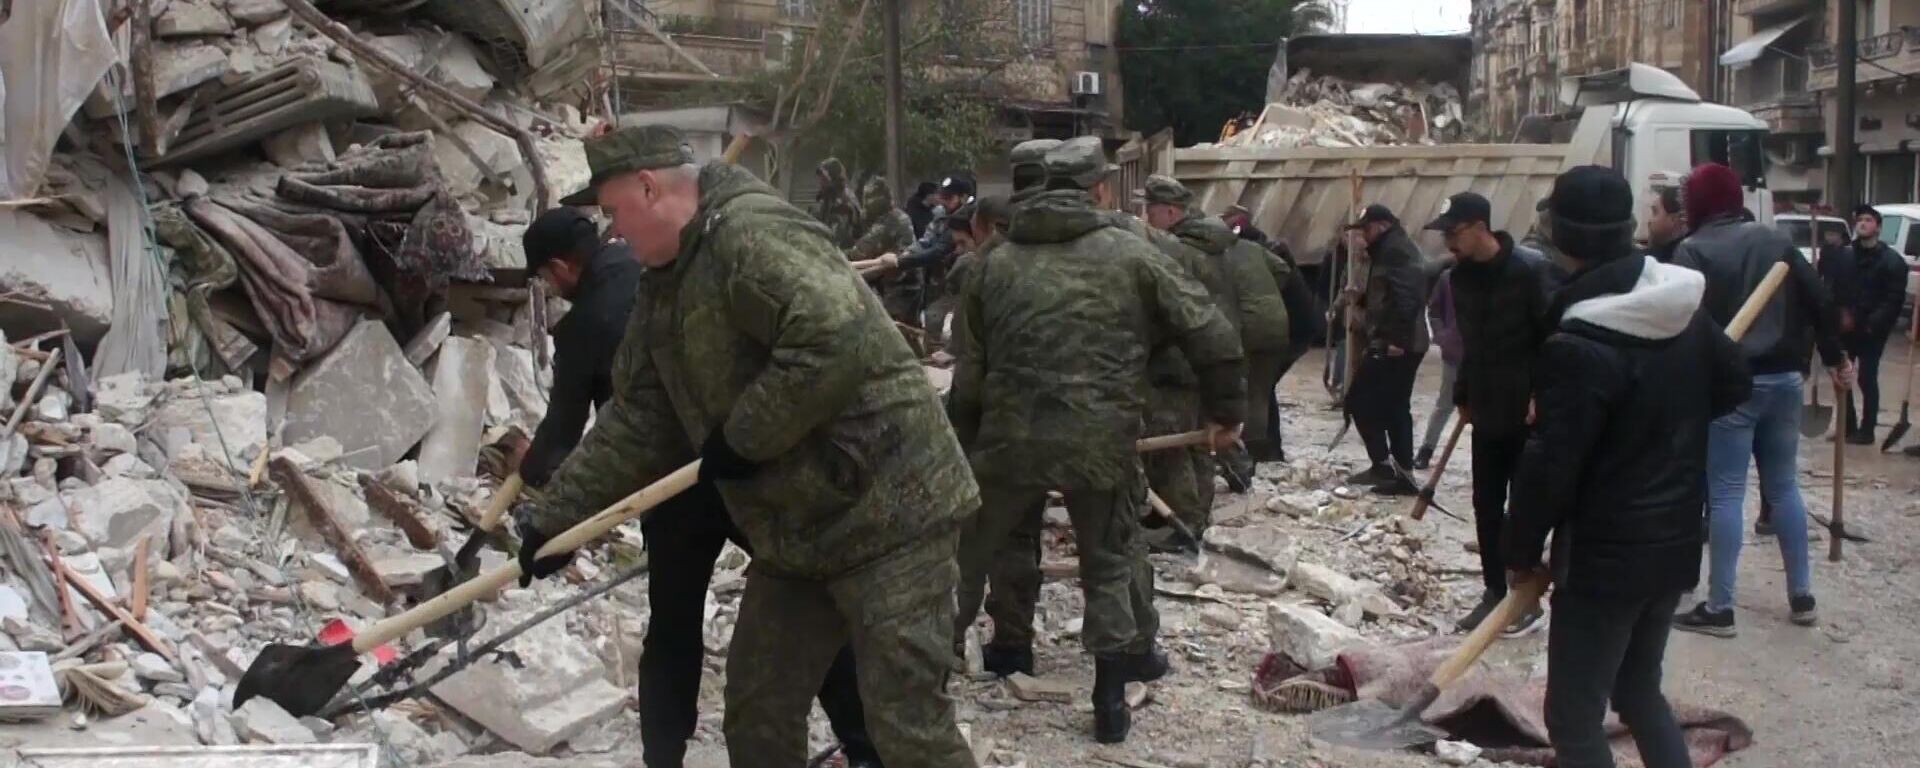 Российские военнослужащие помогают в ликвидации последствий разрушительного землетрясения в Сирии. - Sputnik Кыргызстан, 1920, 08.02.2023